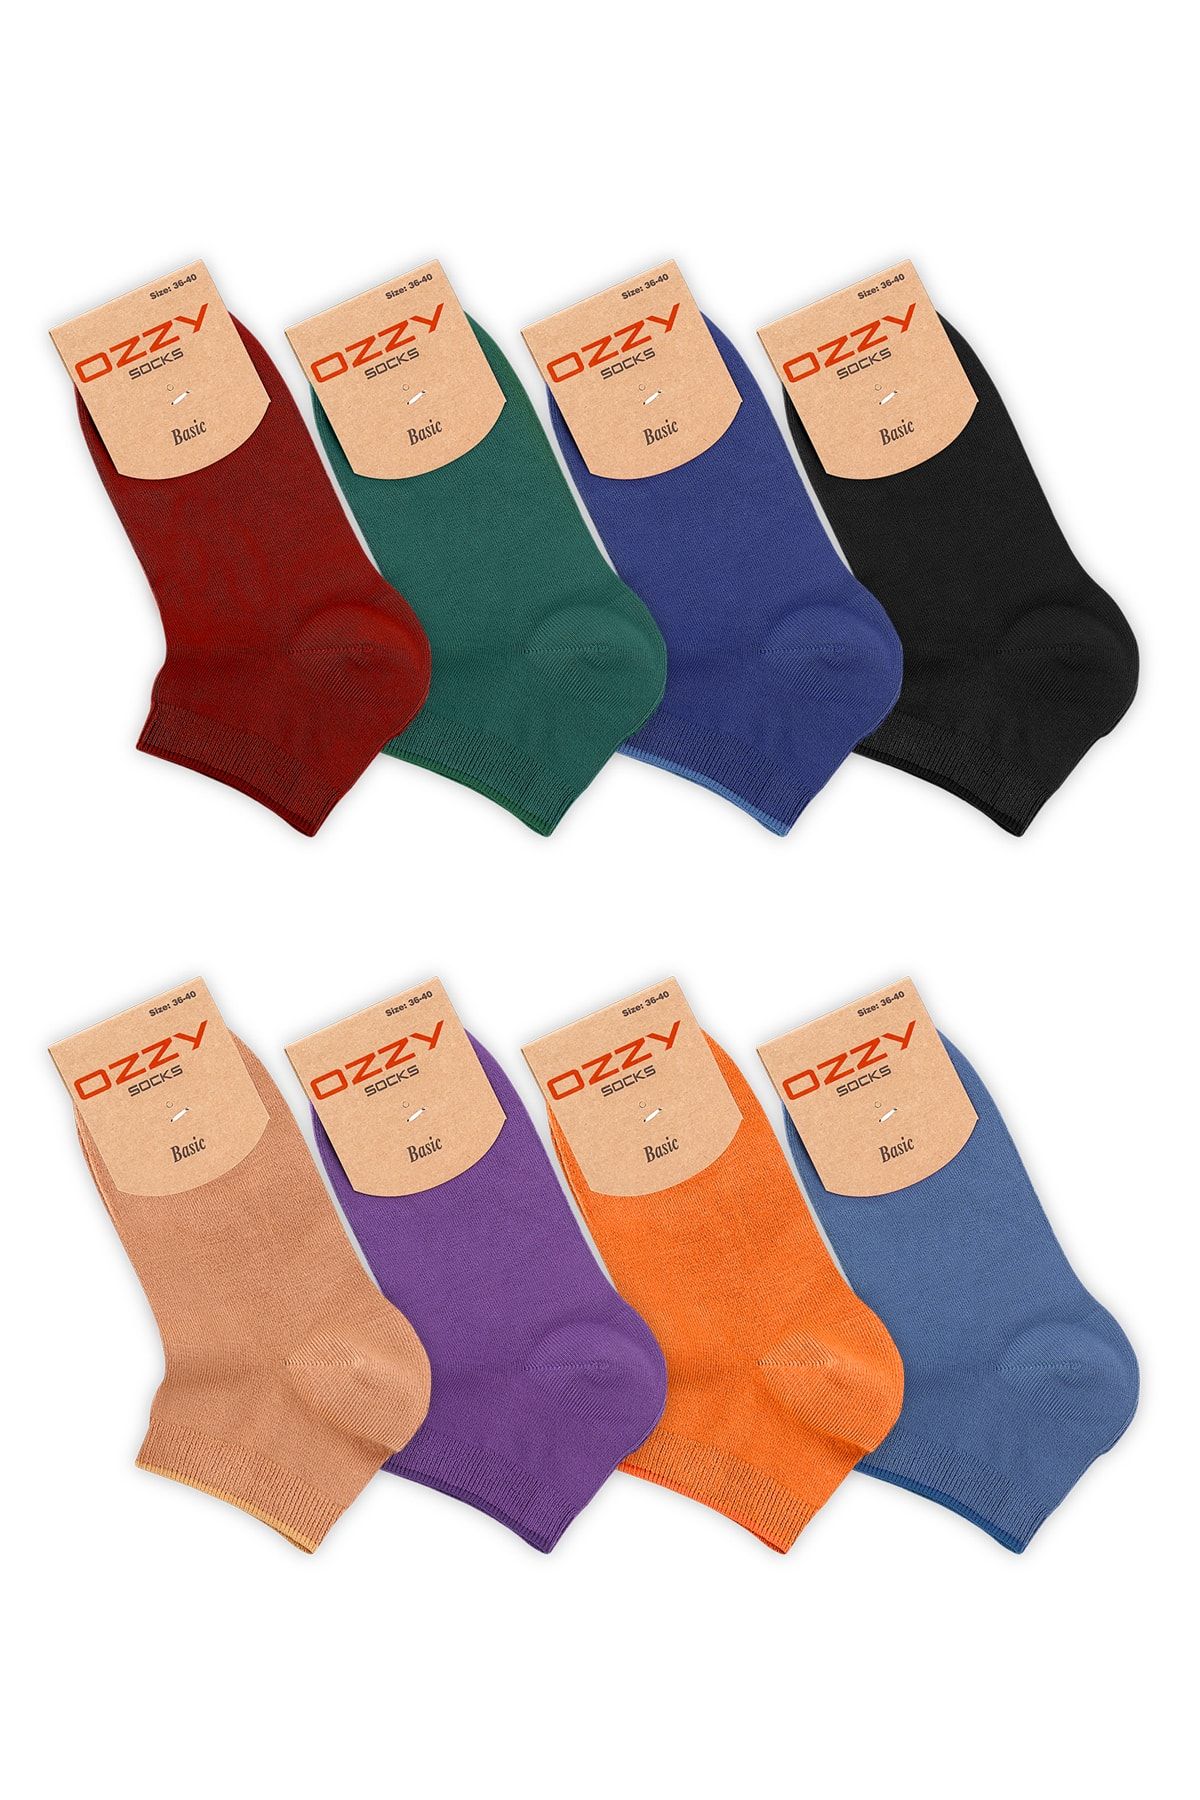 Ozzy Socks 8 Çift Bambu Kadın Dikişsiz Patik Çorap 4 Mevsim Dayanıklı Topuk Ve Burun